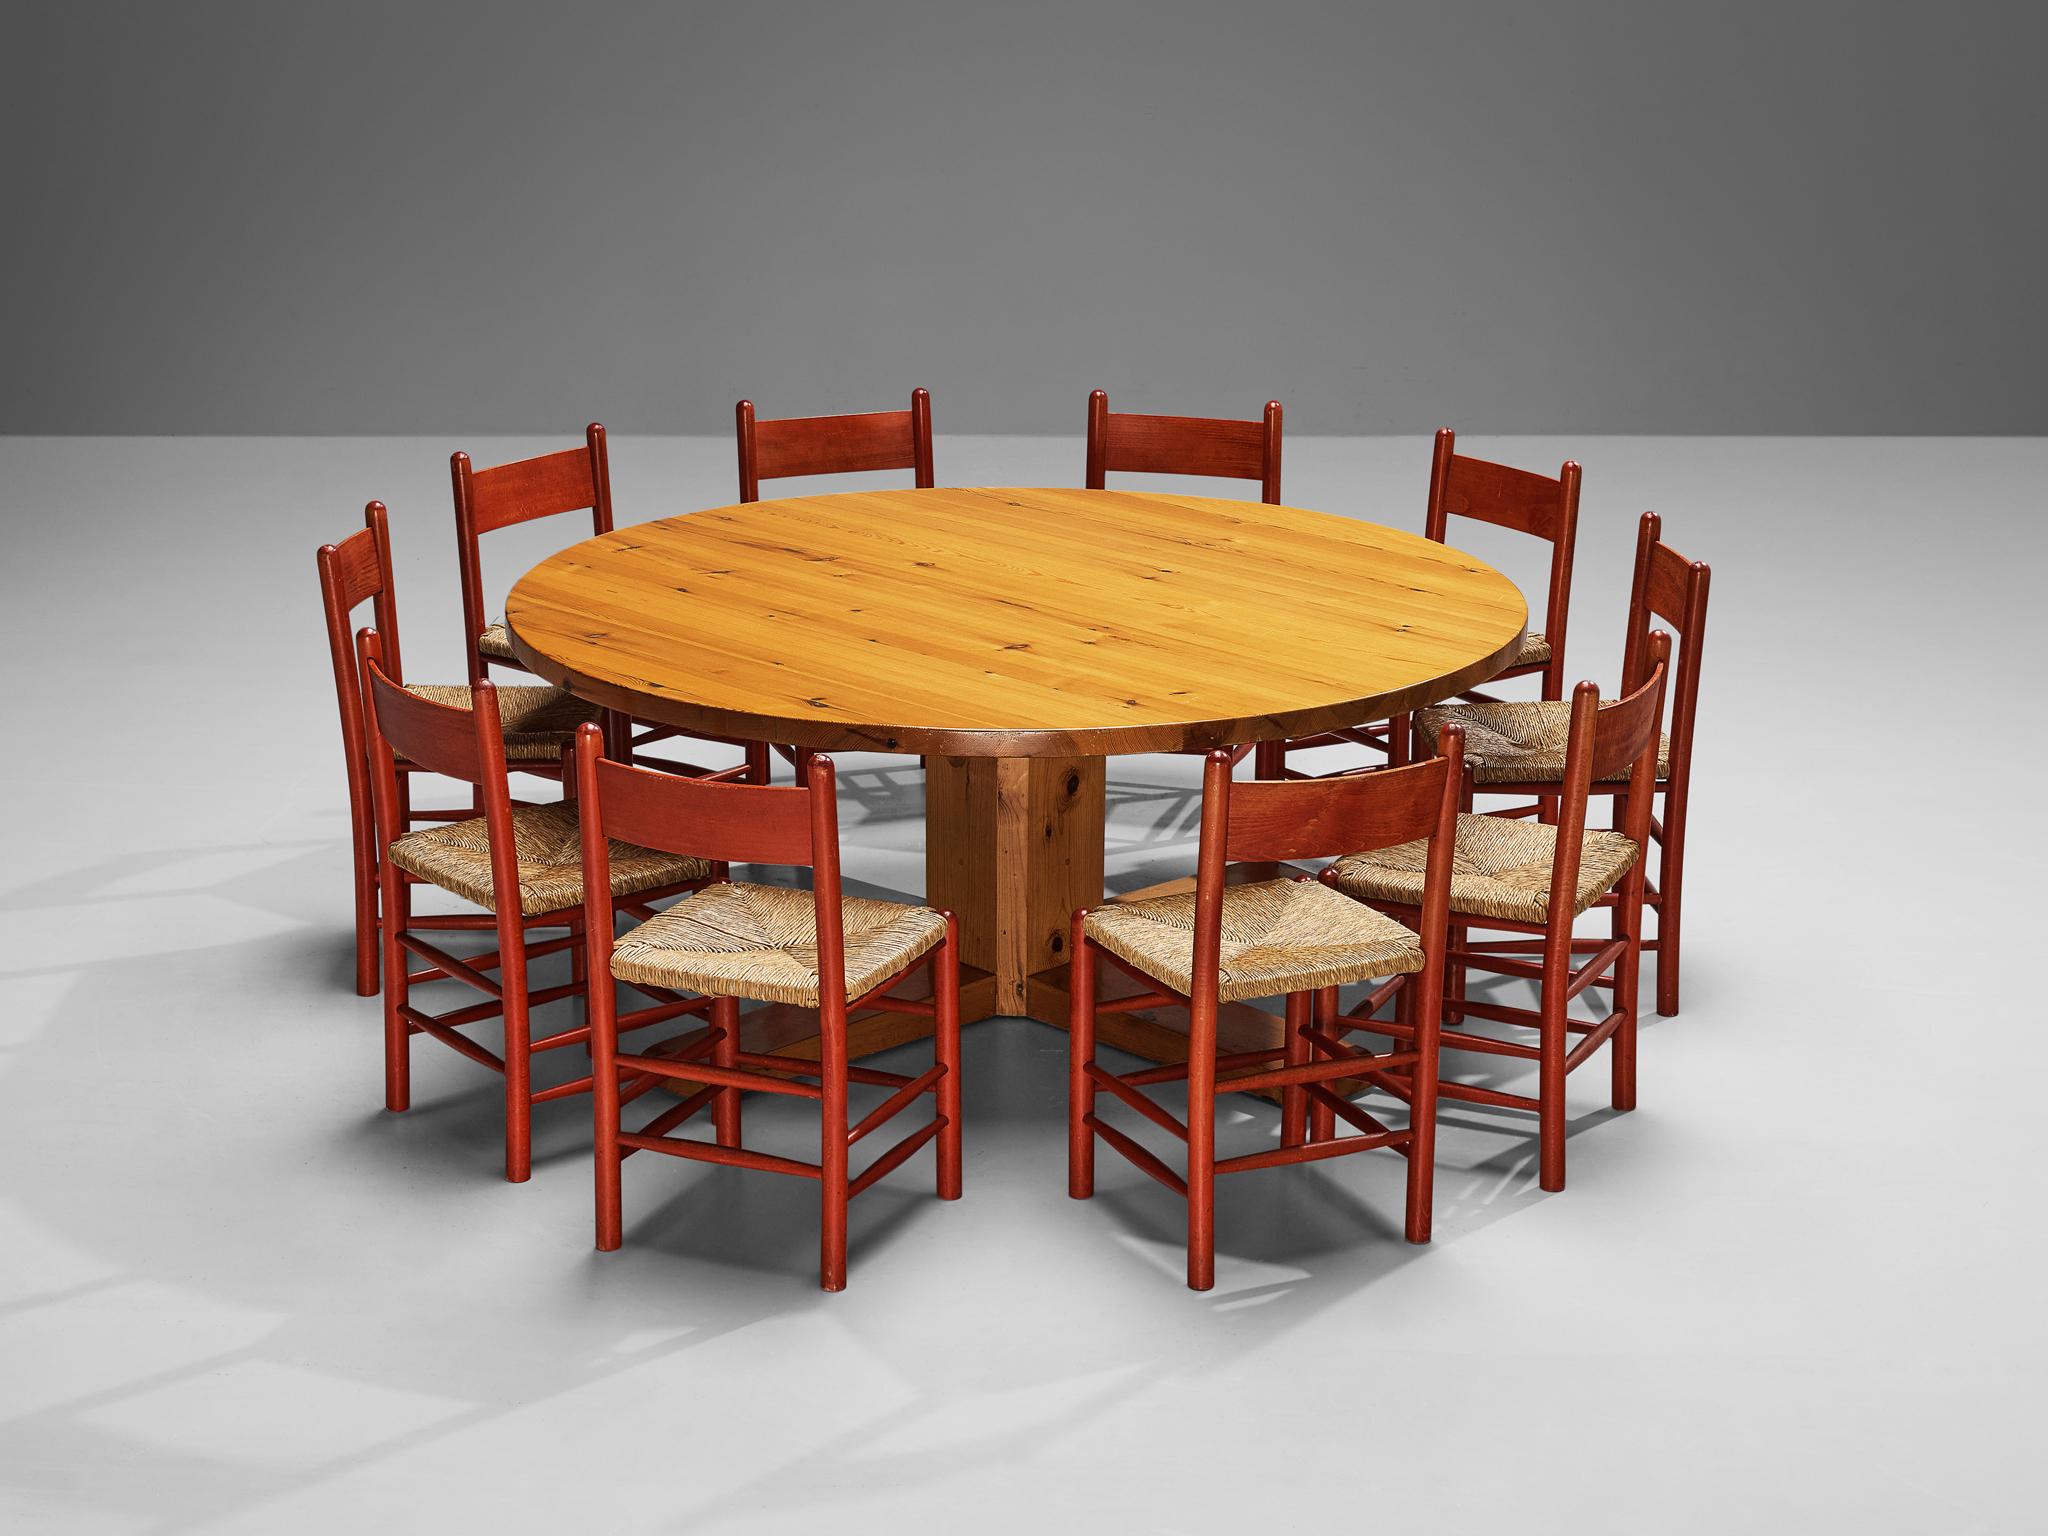 Schönes Esszimmer-Set bestehend aus einem großen spanischen Tisch aus massivem Kiefernholz und acht französischen Esszimmerstühlen aus rot lackierter Buche mit Strohsitzen. 

Großer Esstisch, Kiefer massiv, Spanien, 1950er Jahre

Dieser